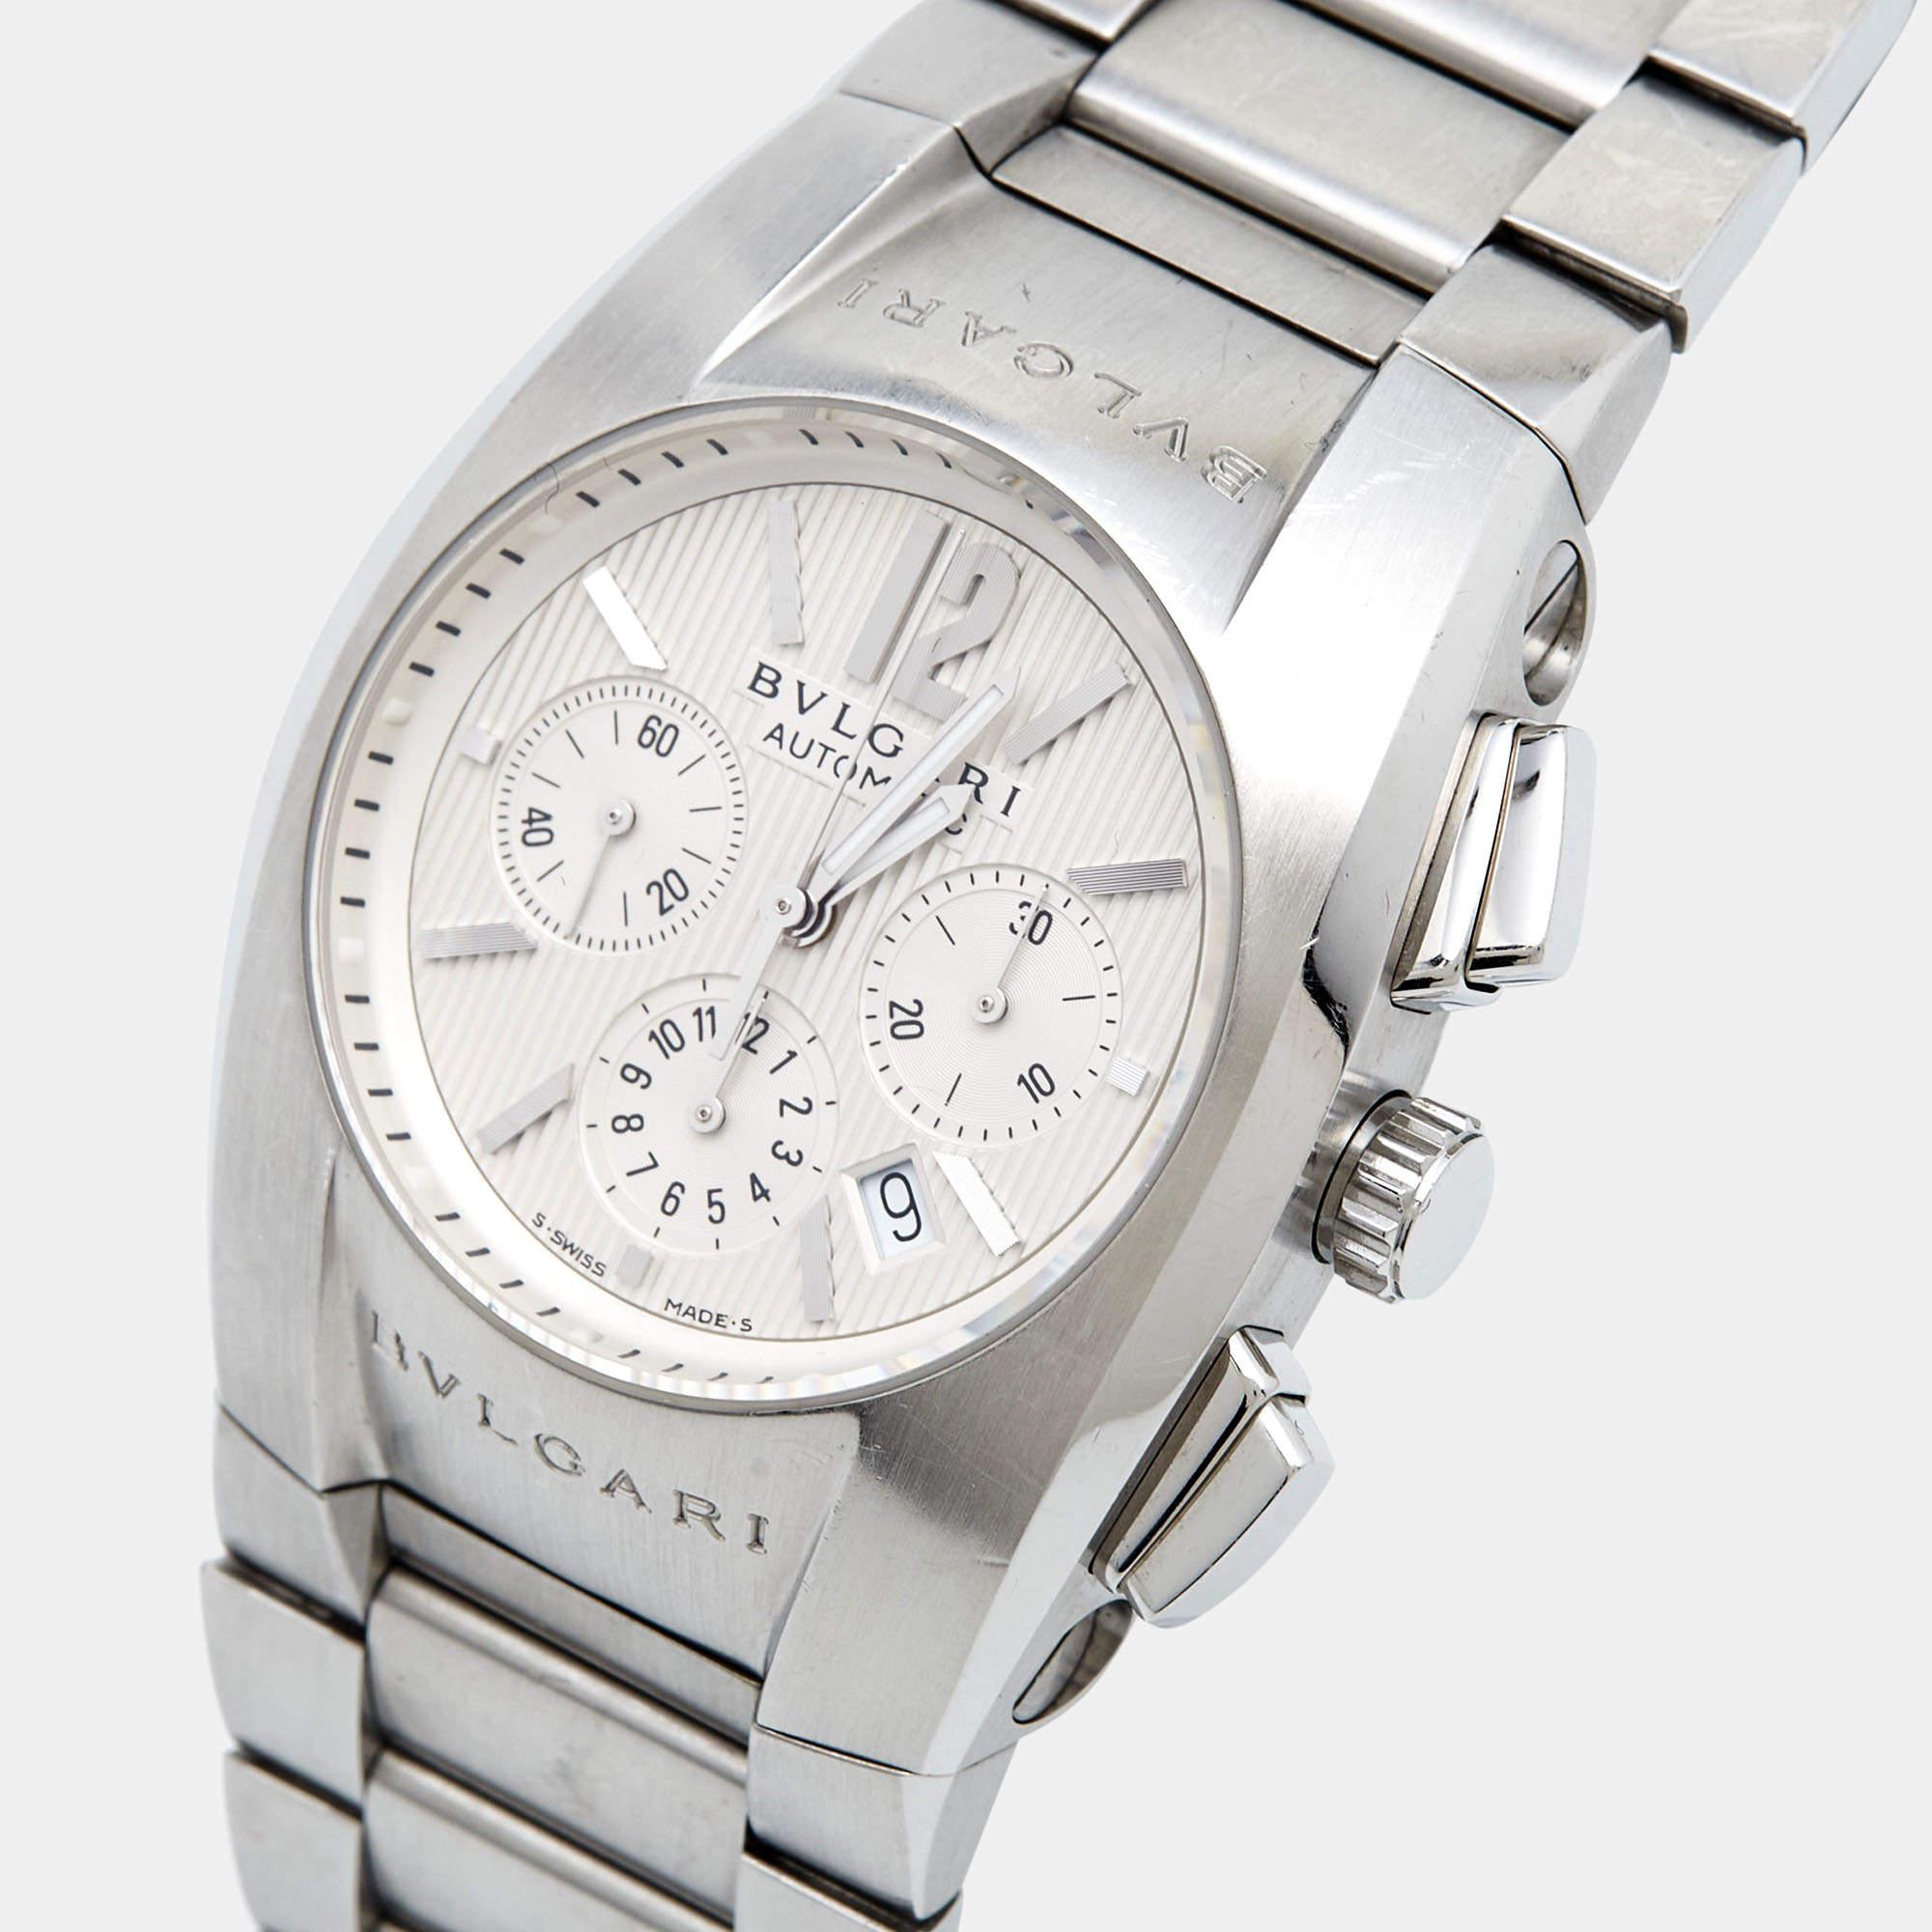 Votre style quotidien mérite la touche de luxe apportée par cette montre-bracelet pour homme Bvlgari. Fabriquée à partir de matériaux durables, cette montre de créateur est dotée d'un boîtier robuste, d'un cadran facile à lire et d'un bracelet